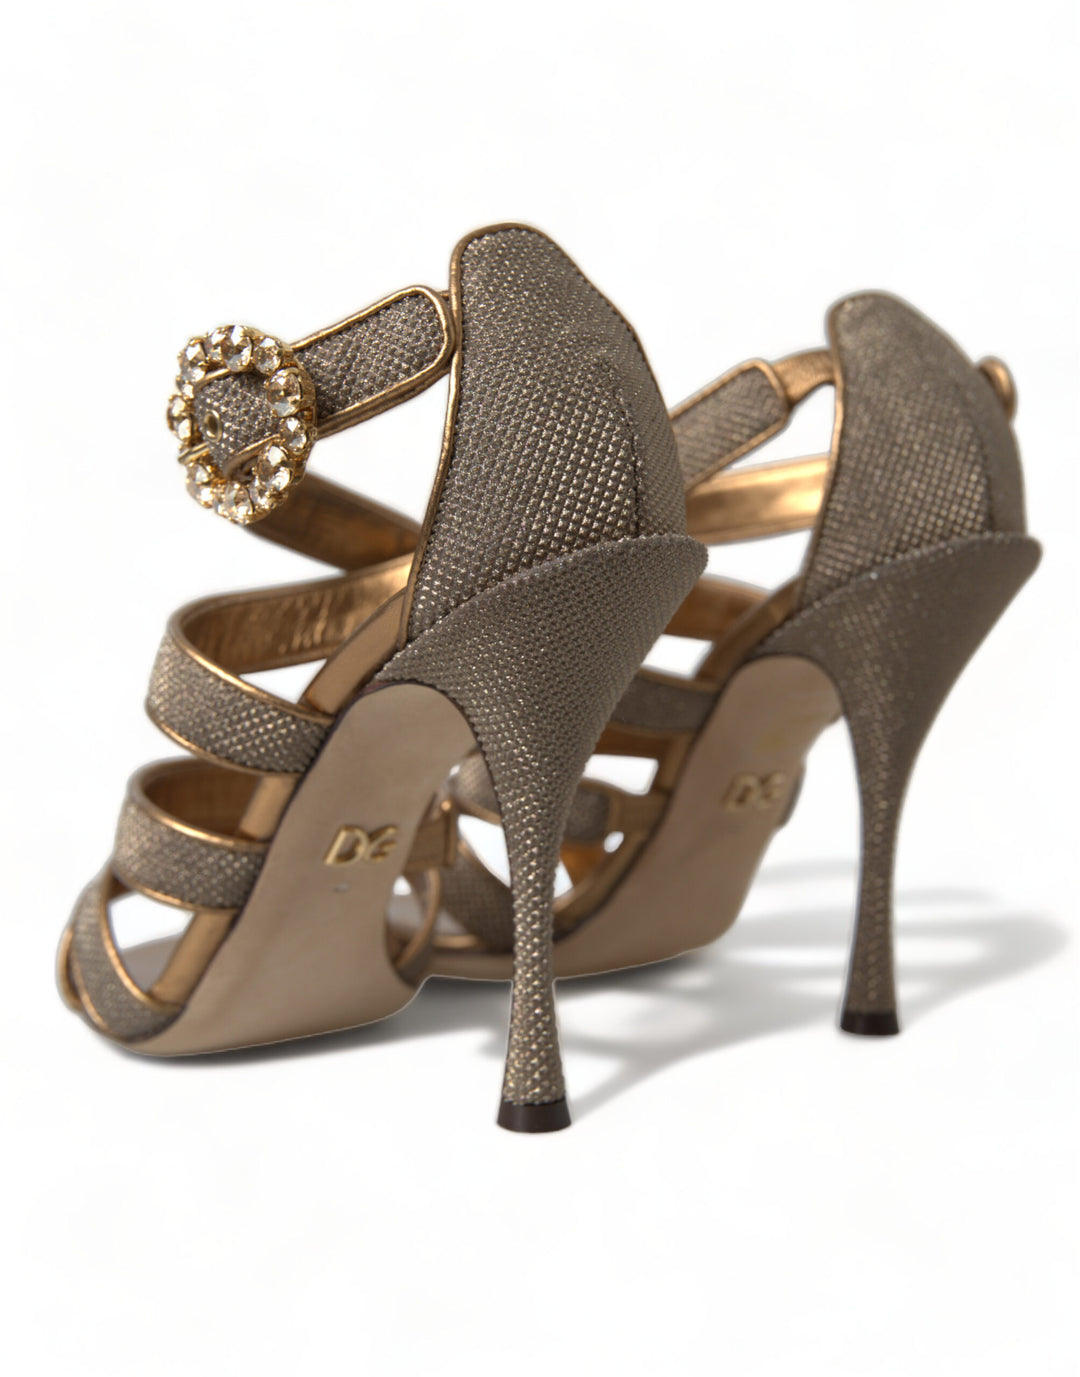 Dolce & Gabbana Bronze Crystal Stiletto Heels Sandals